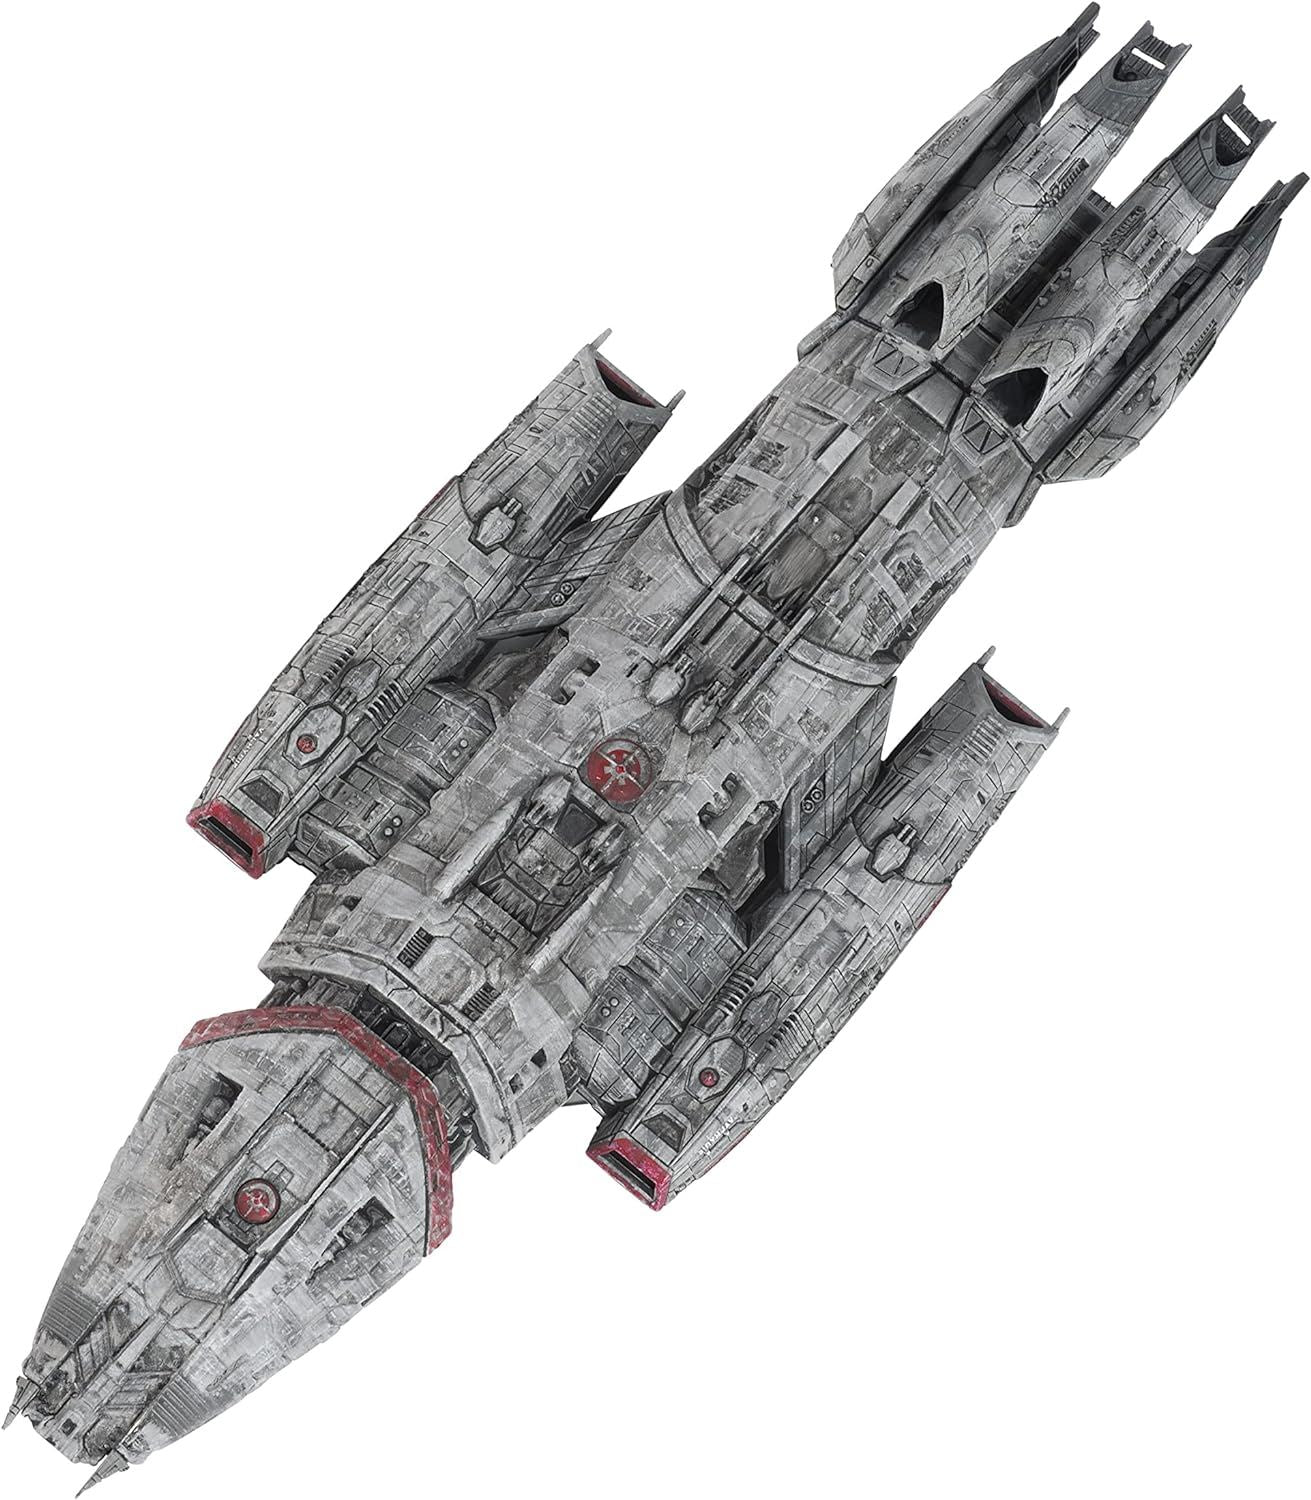 #17 Battlestar Valkyrie Diecast Model Ship (Battlestar Galactica / Eaglemoss)